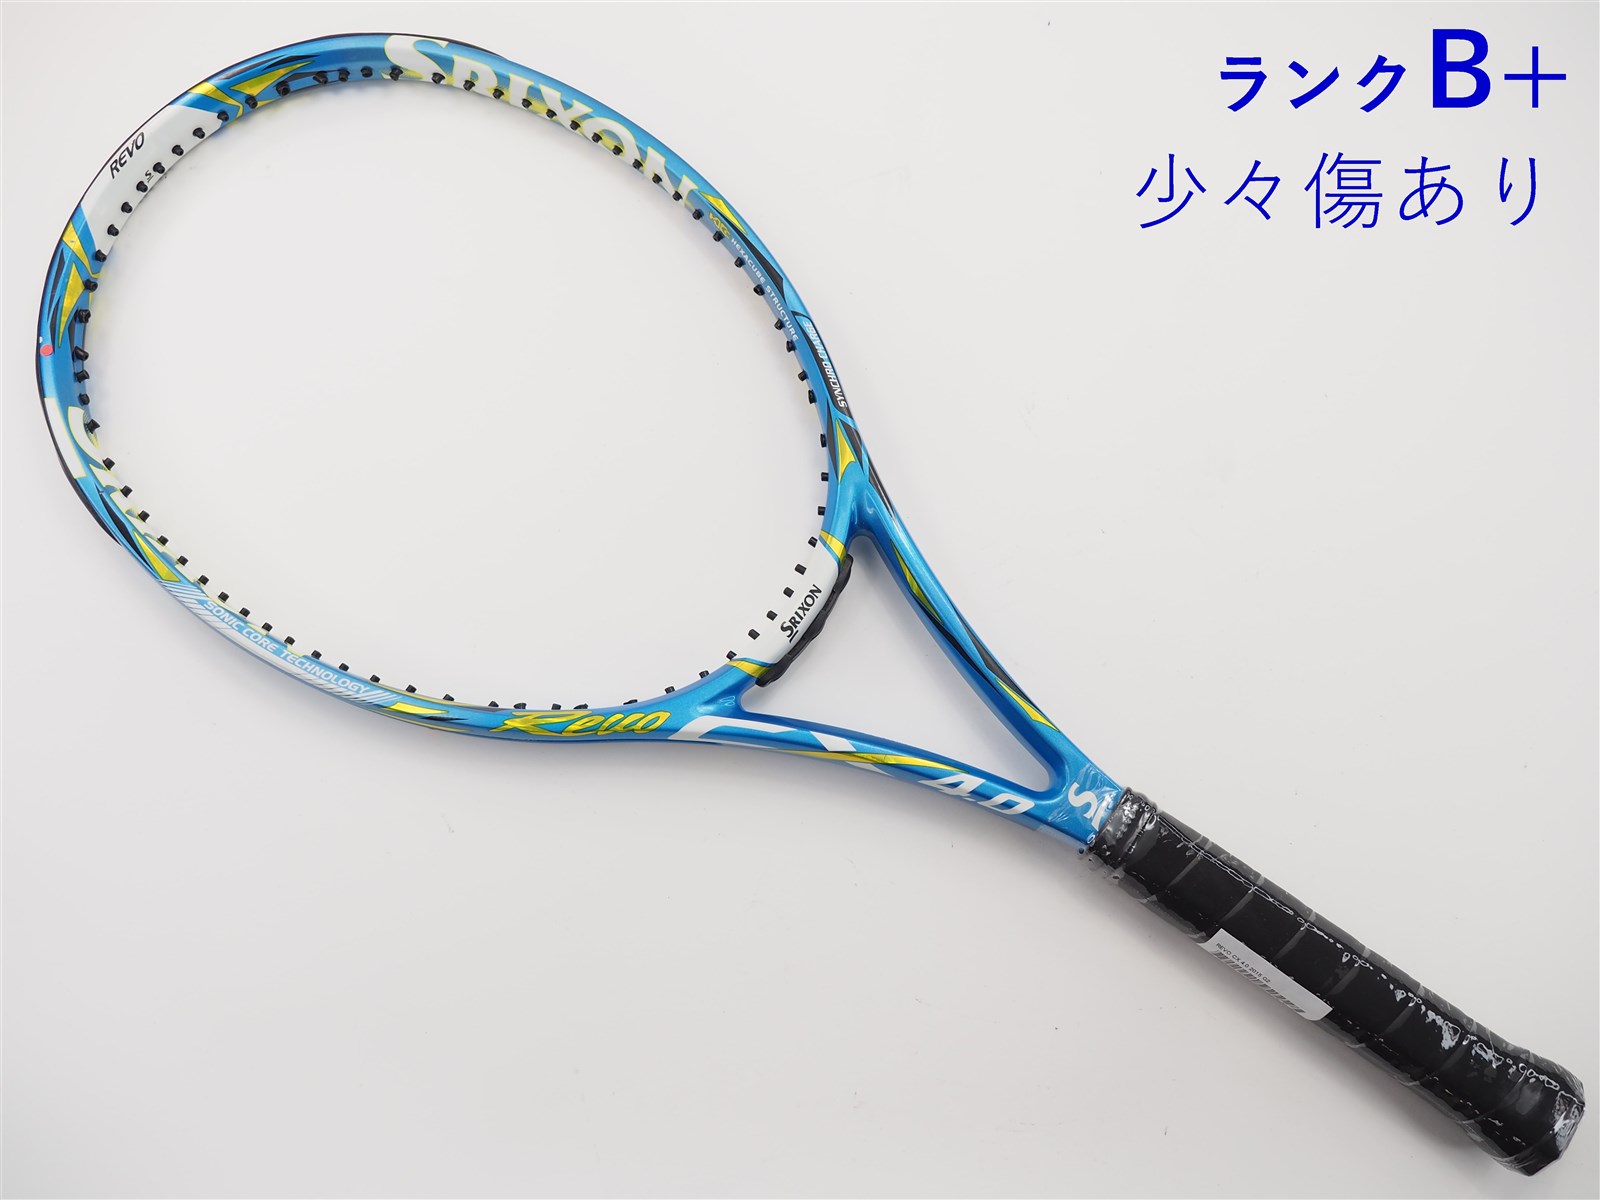 テニスラケット スリクソン レヴォ エックス 4.0 2011年モデル (G2